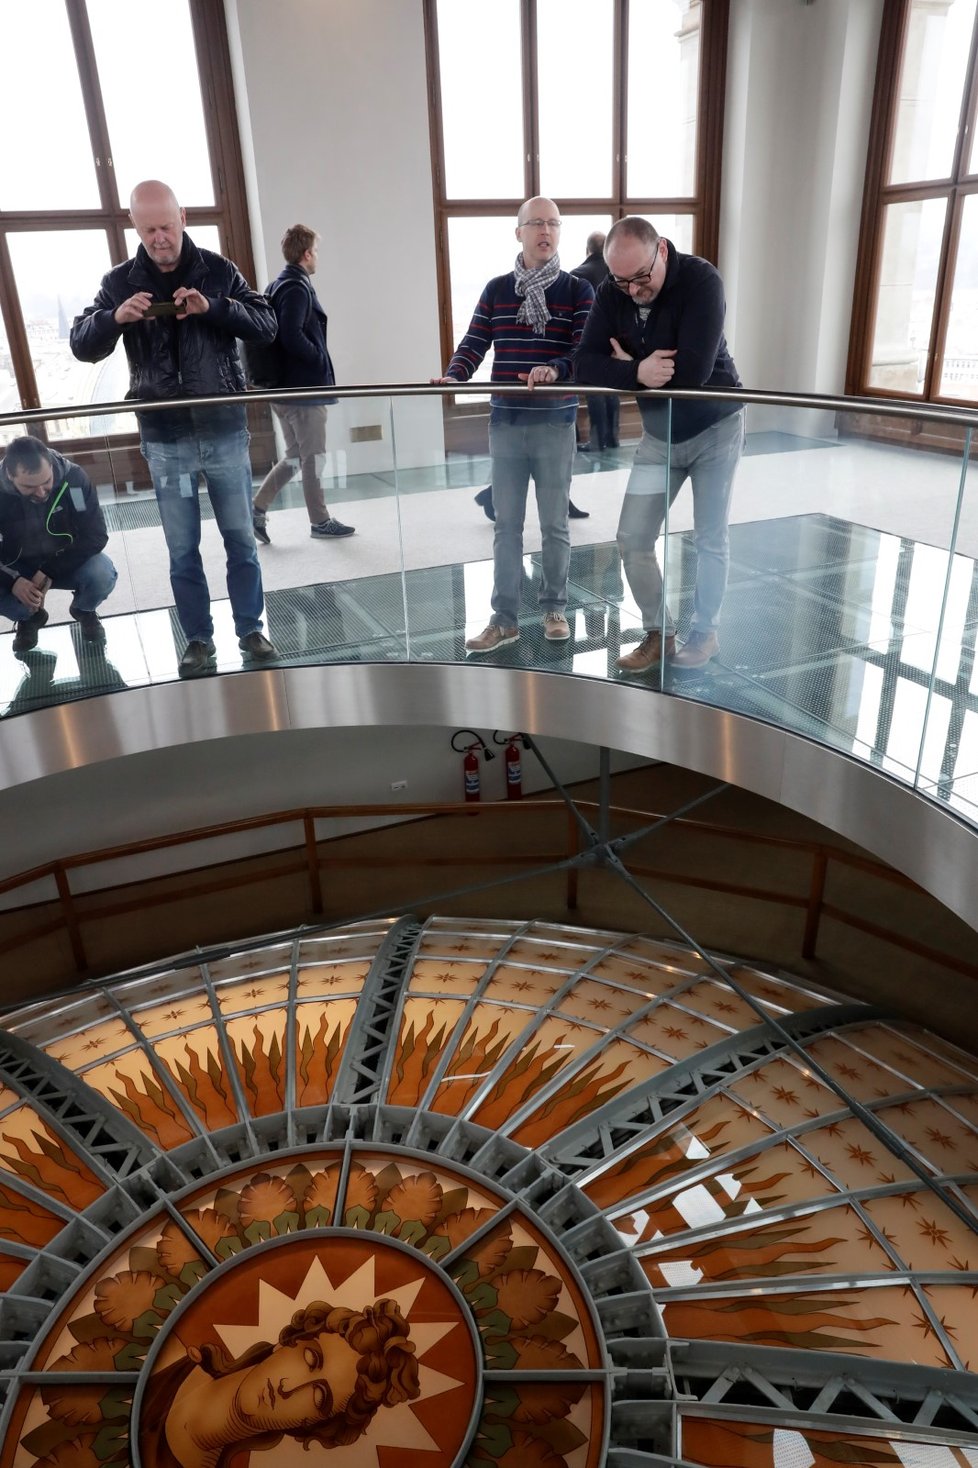 Národní muzeum otevřelo 1. března 2019 po měsíční přestávce své brány. Je konečně bezbariérové, návštěvníci se mohou podívat také do kopule.